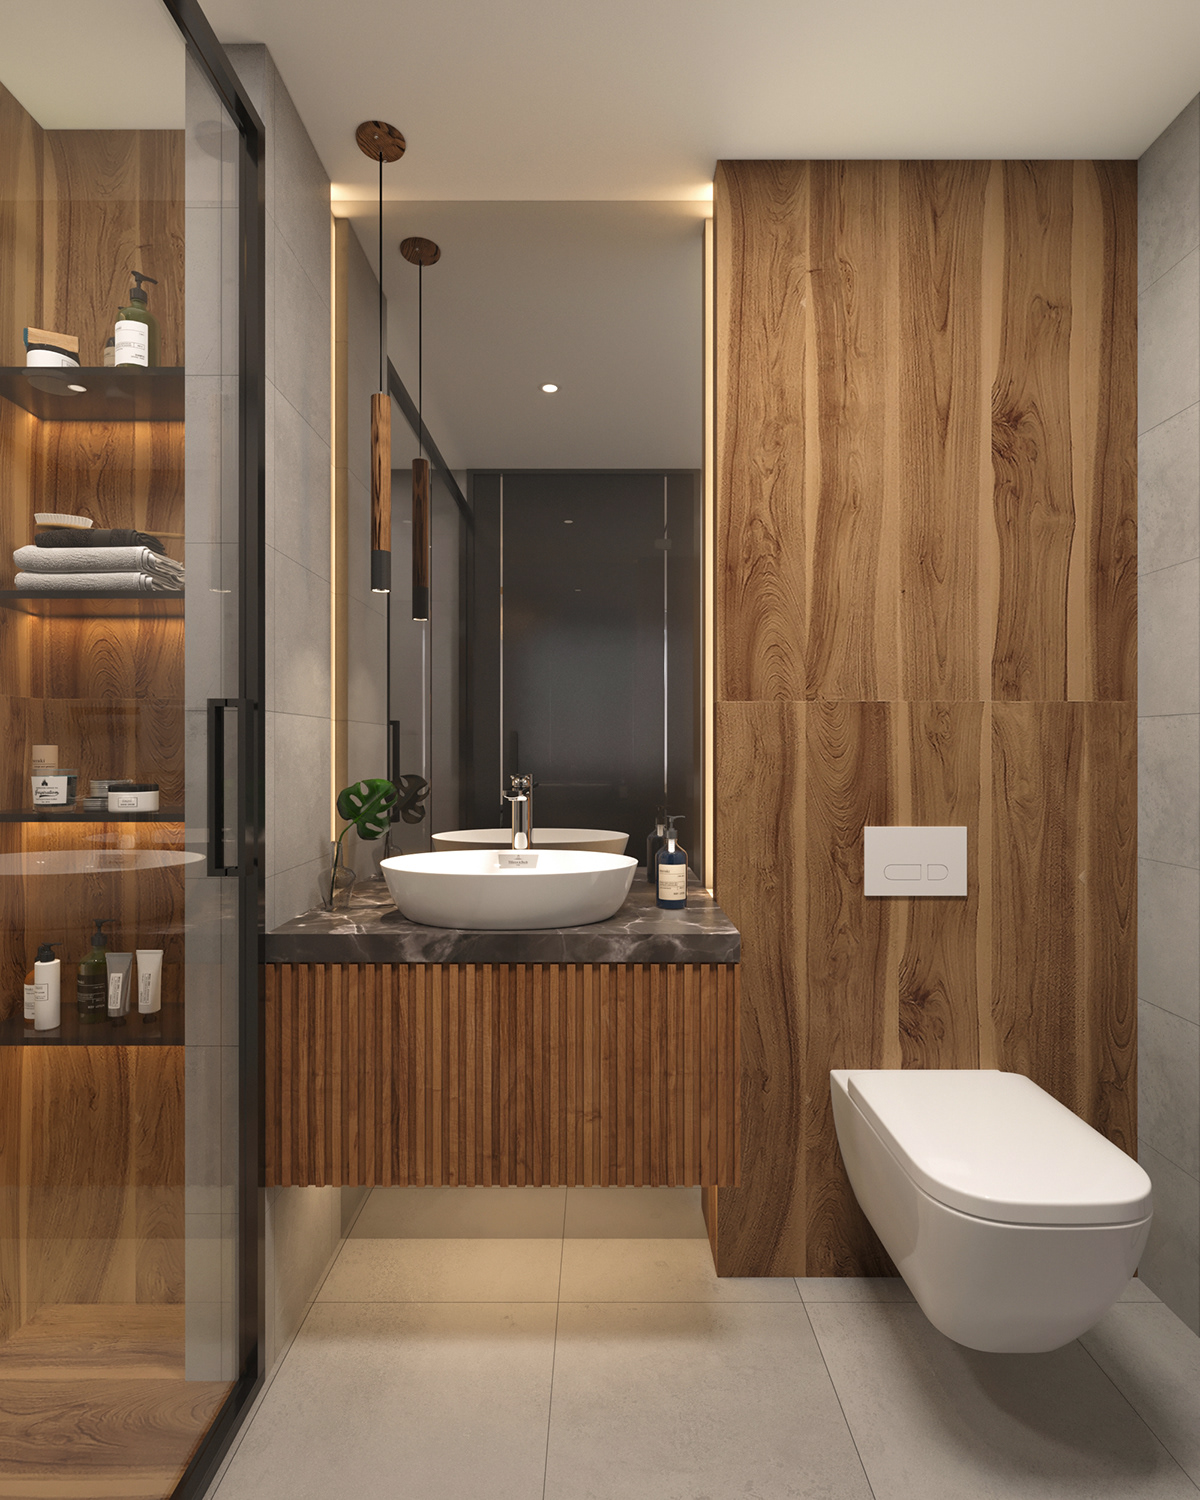 bathroom modern architecture interior design  visualization Render 3ds max corona design Project